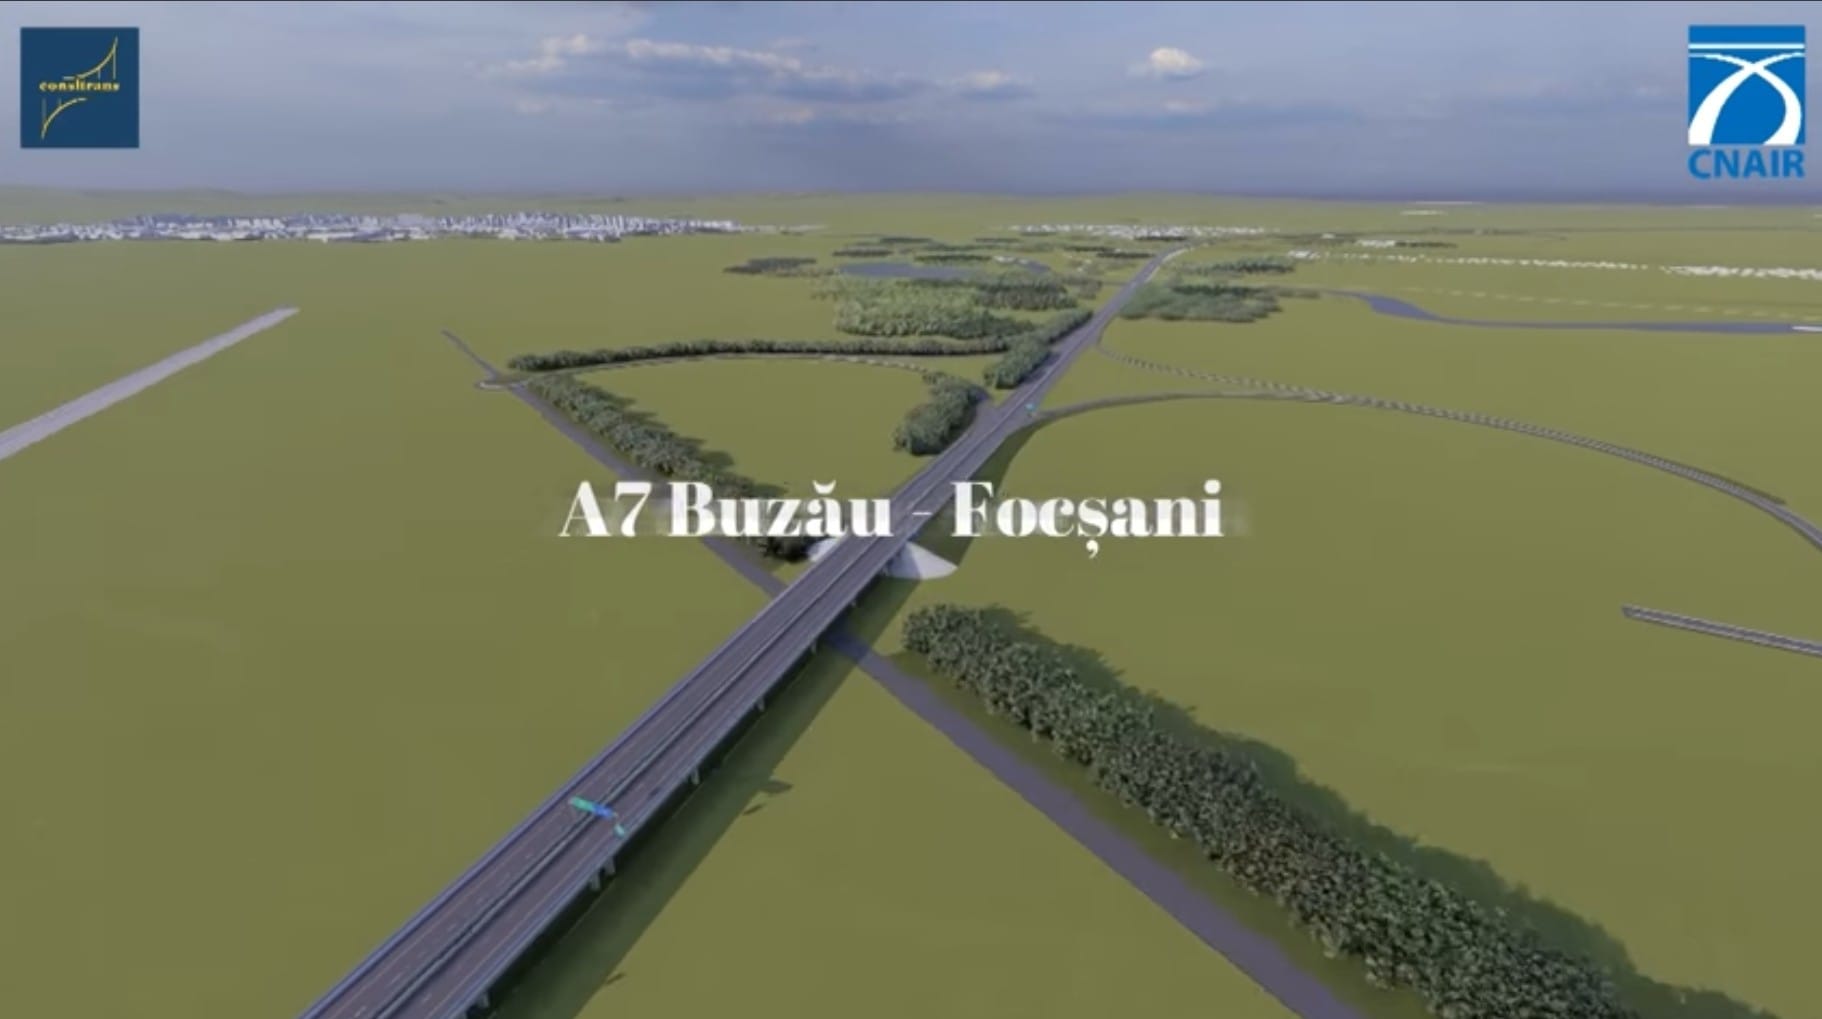 CNAIR dă startul licitației pentru construcția autostrăzii Buzău – Focșani, două tronsoane cu o lungime de 15,5 km